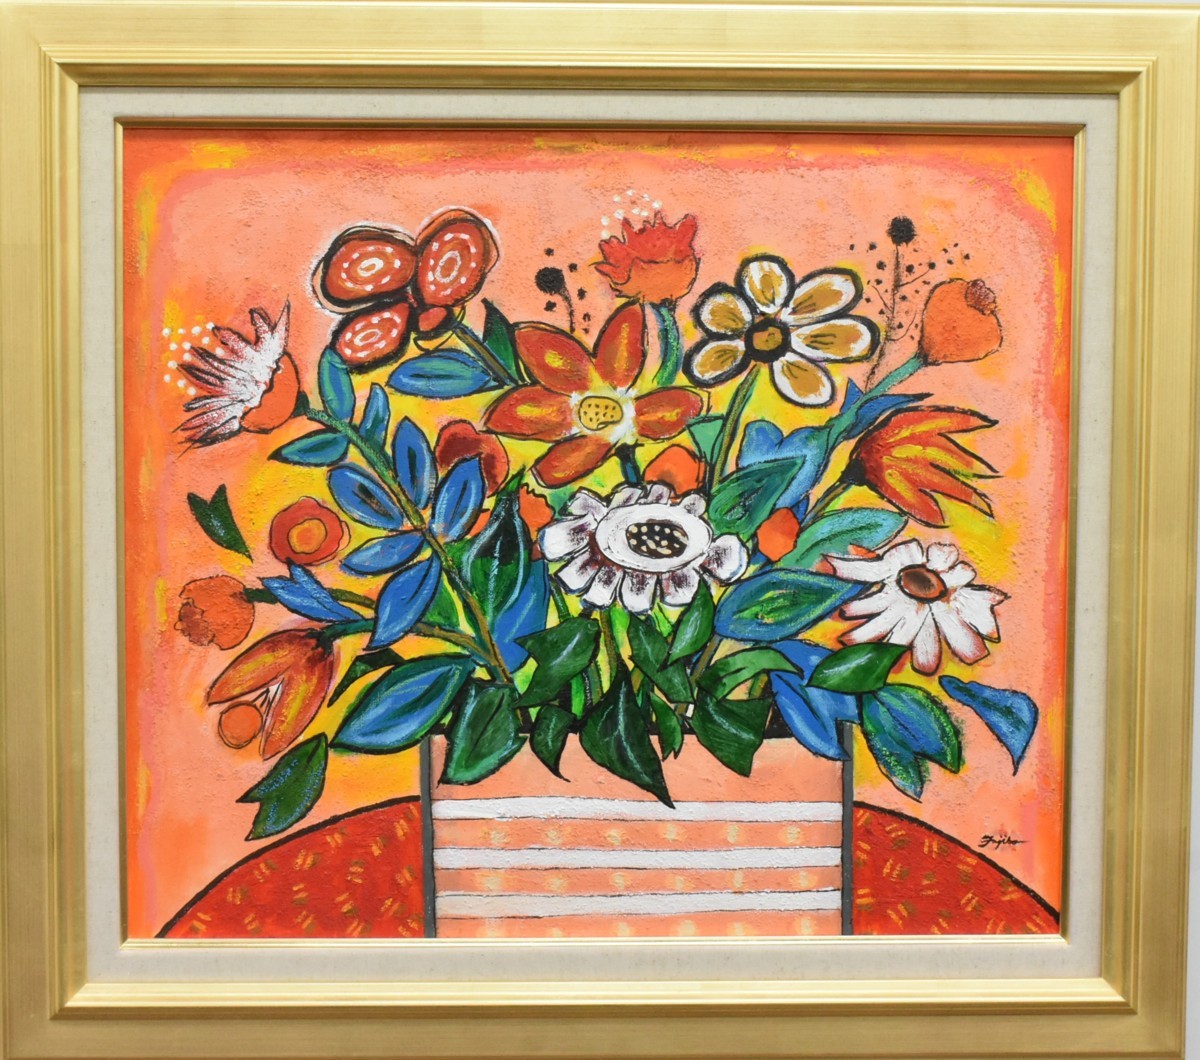 [Galerie Masami] Une nouvelle peinture à l'huile d'un artiste populaire ! Fujiko Shirai, Bouquet n°10 envoyé [5, 000 pièces exposées ! Vous êtes sûr de trouver une pièce qui vous plaira], Peinture, Peinture à l'huile, Nature morte